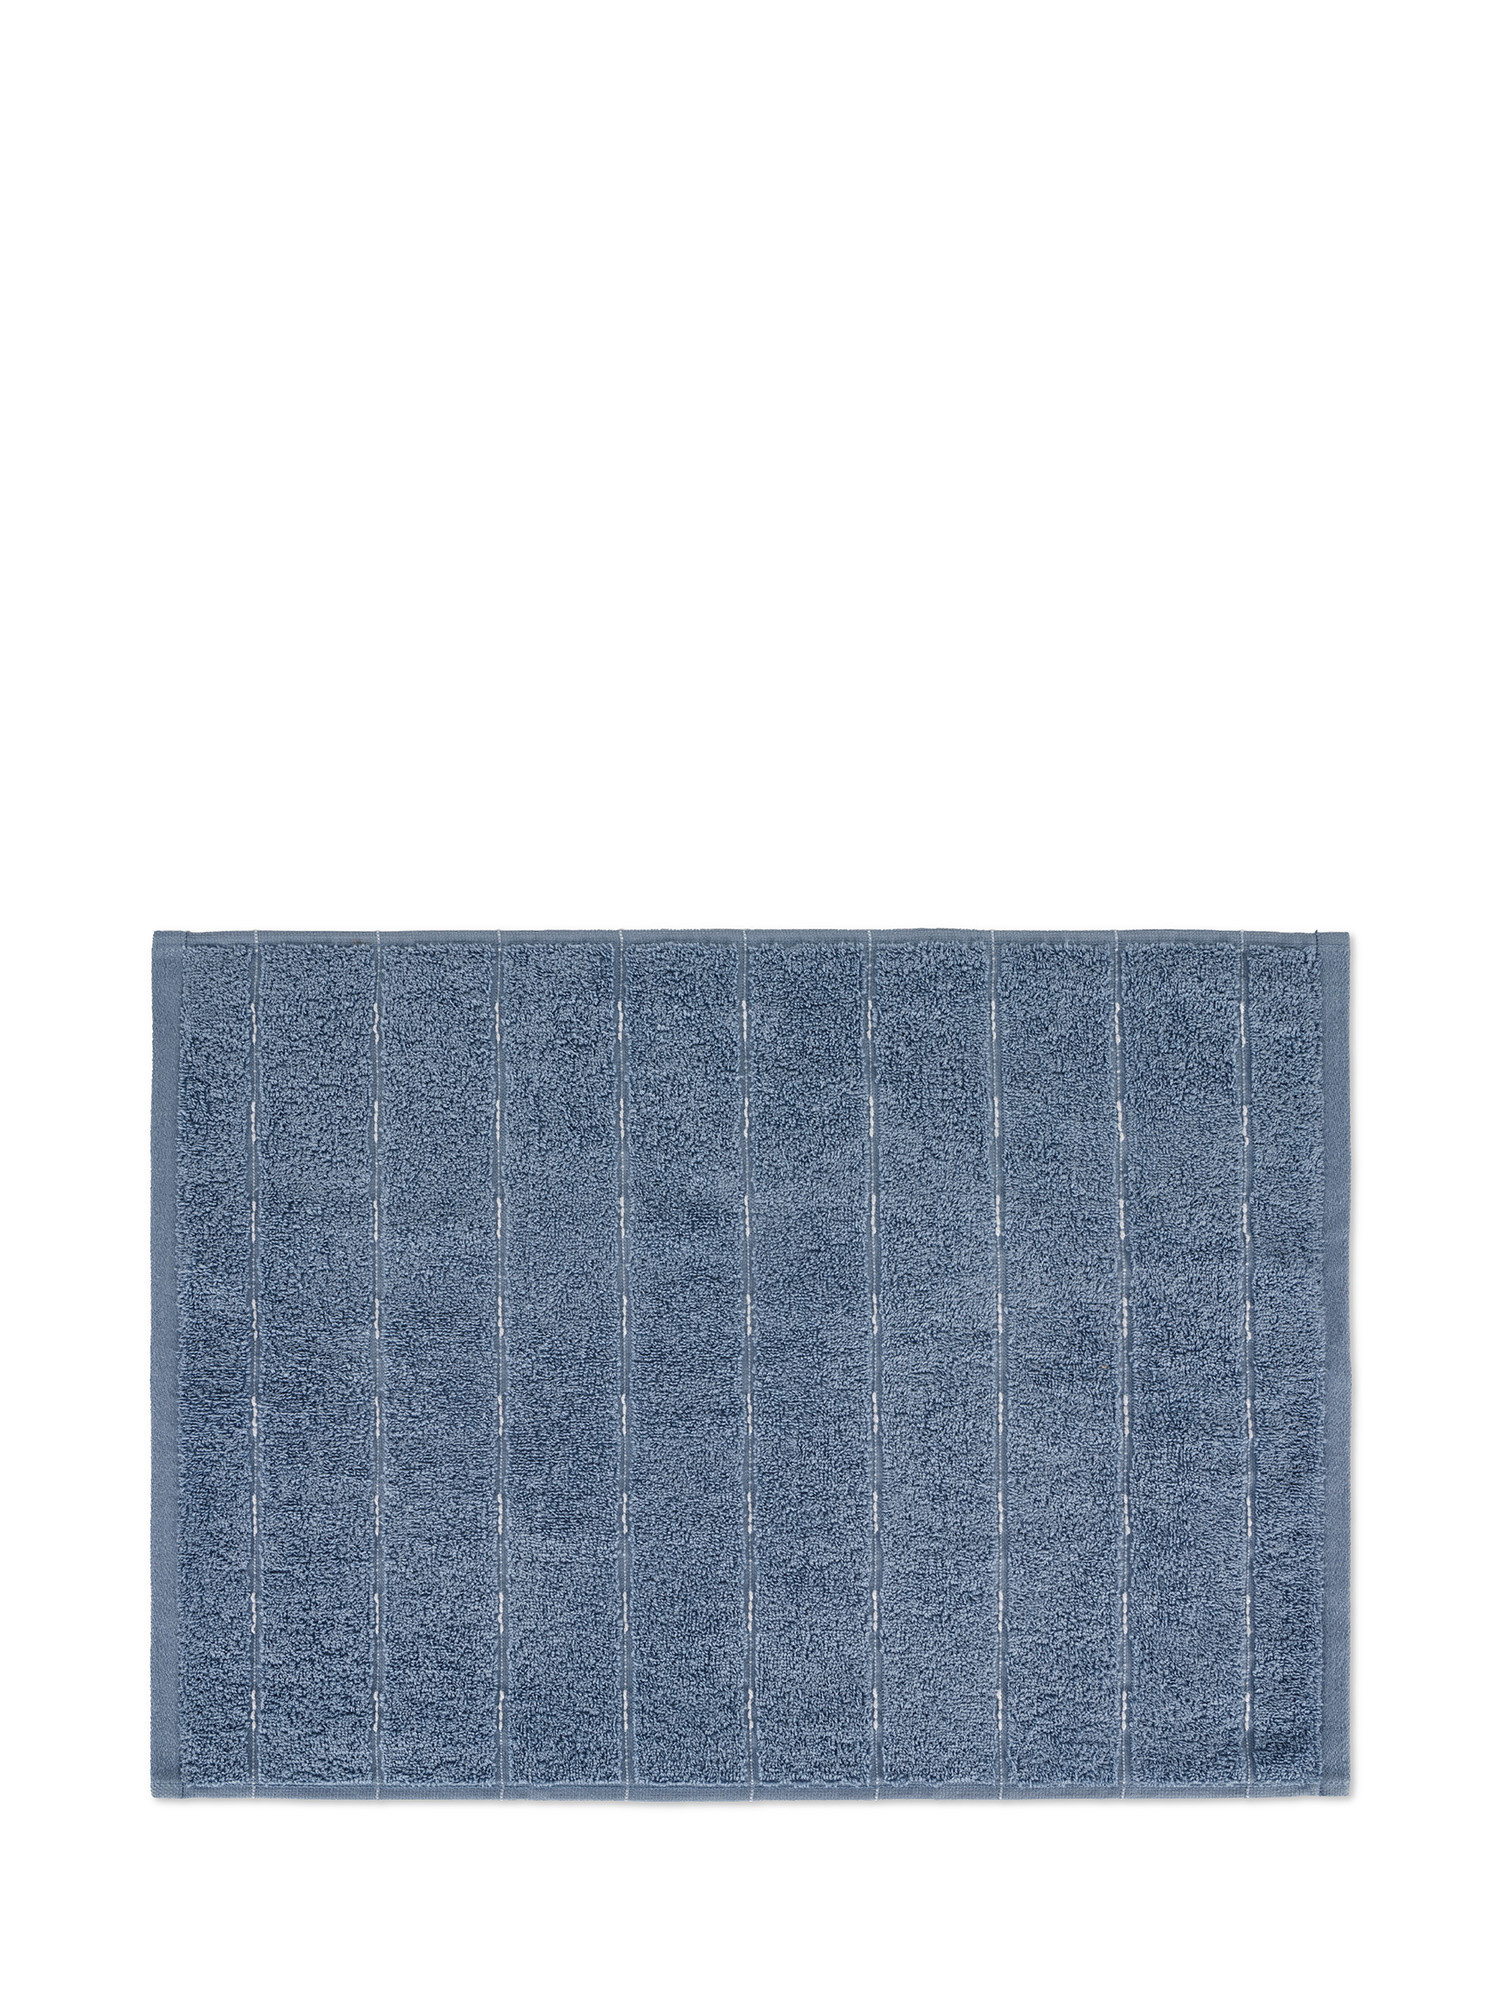 Asciugamano di puro cotone tinto in filo effetto impuntura, Blu, large image number 1